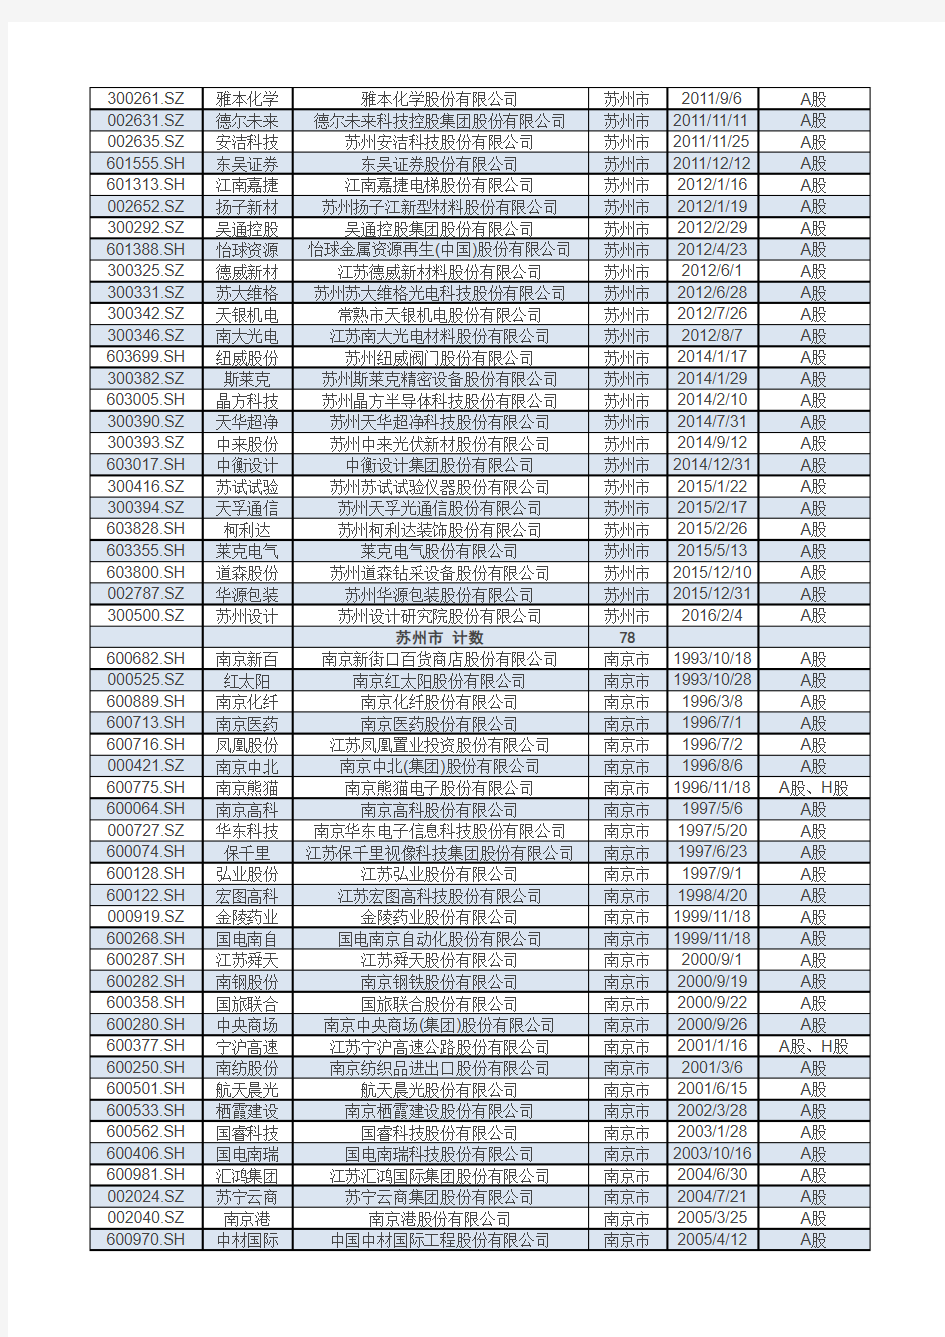 江苏各地市A股上市公司统计汇总(截至2016年10月)